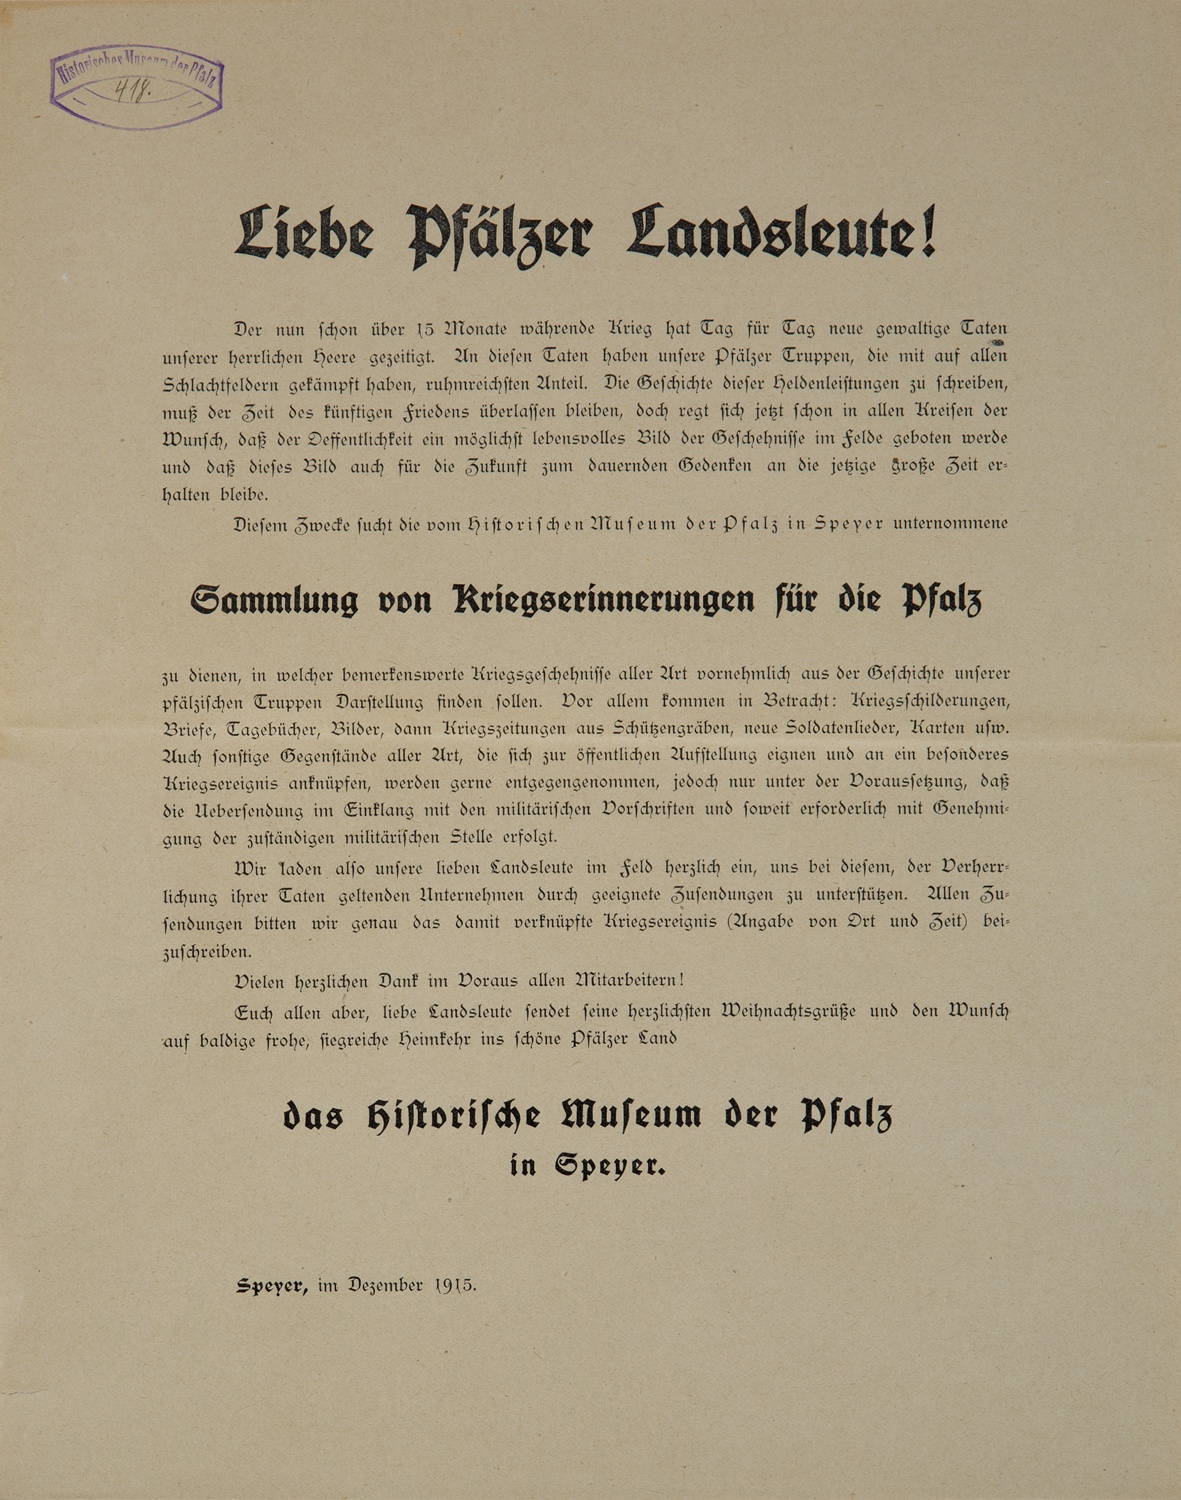 Sammlungsaufruf "Sammlung von Kriegserinnerungen für die Pfalz" (Historisches Museum der Pfalz, Speyer CC BY)